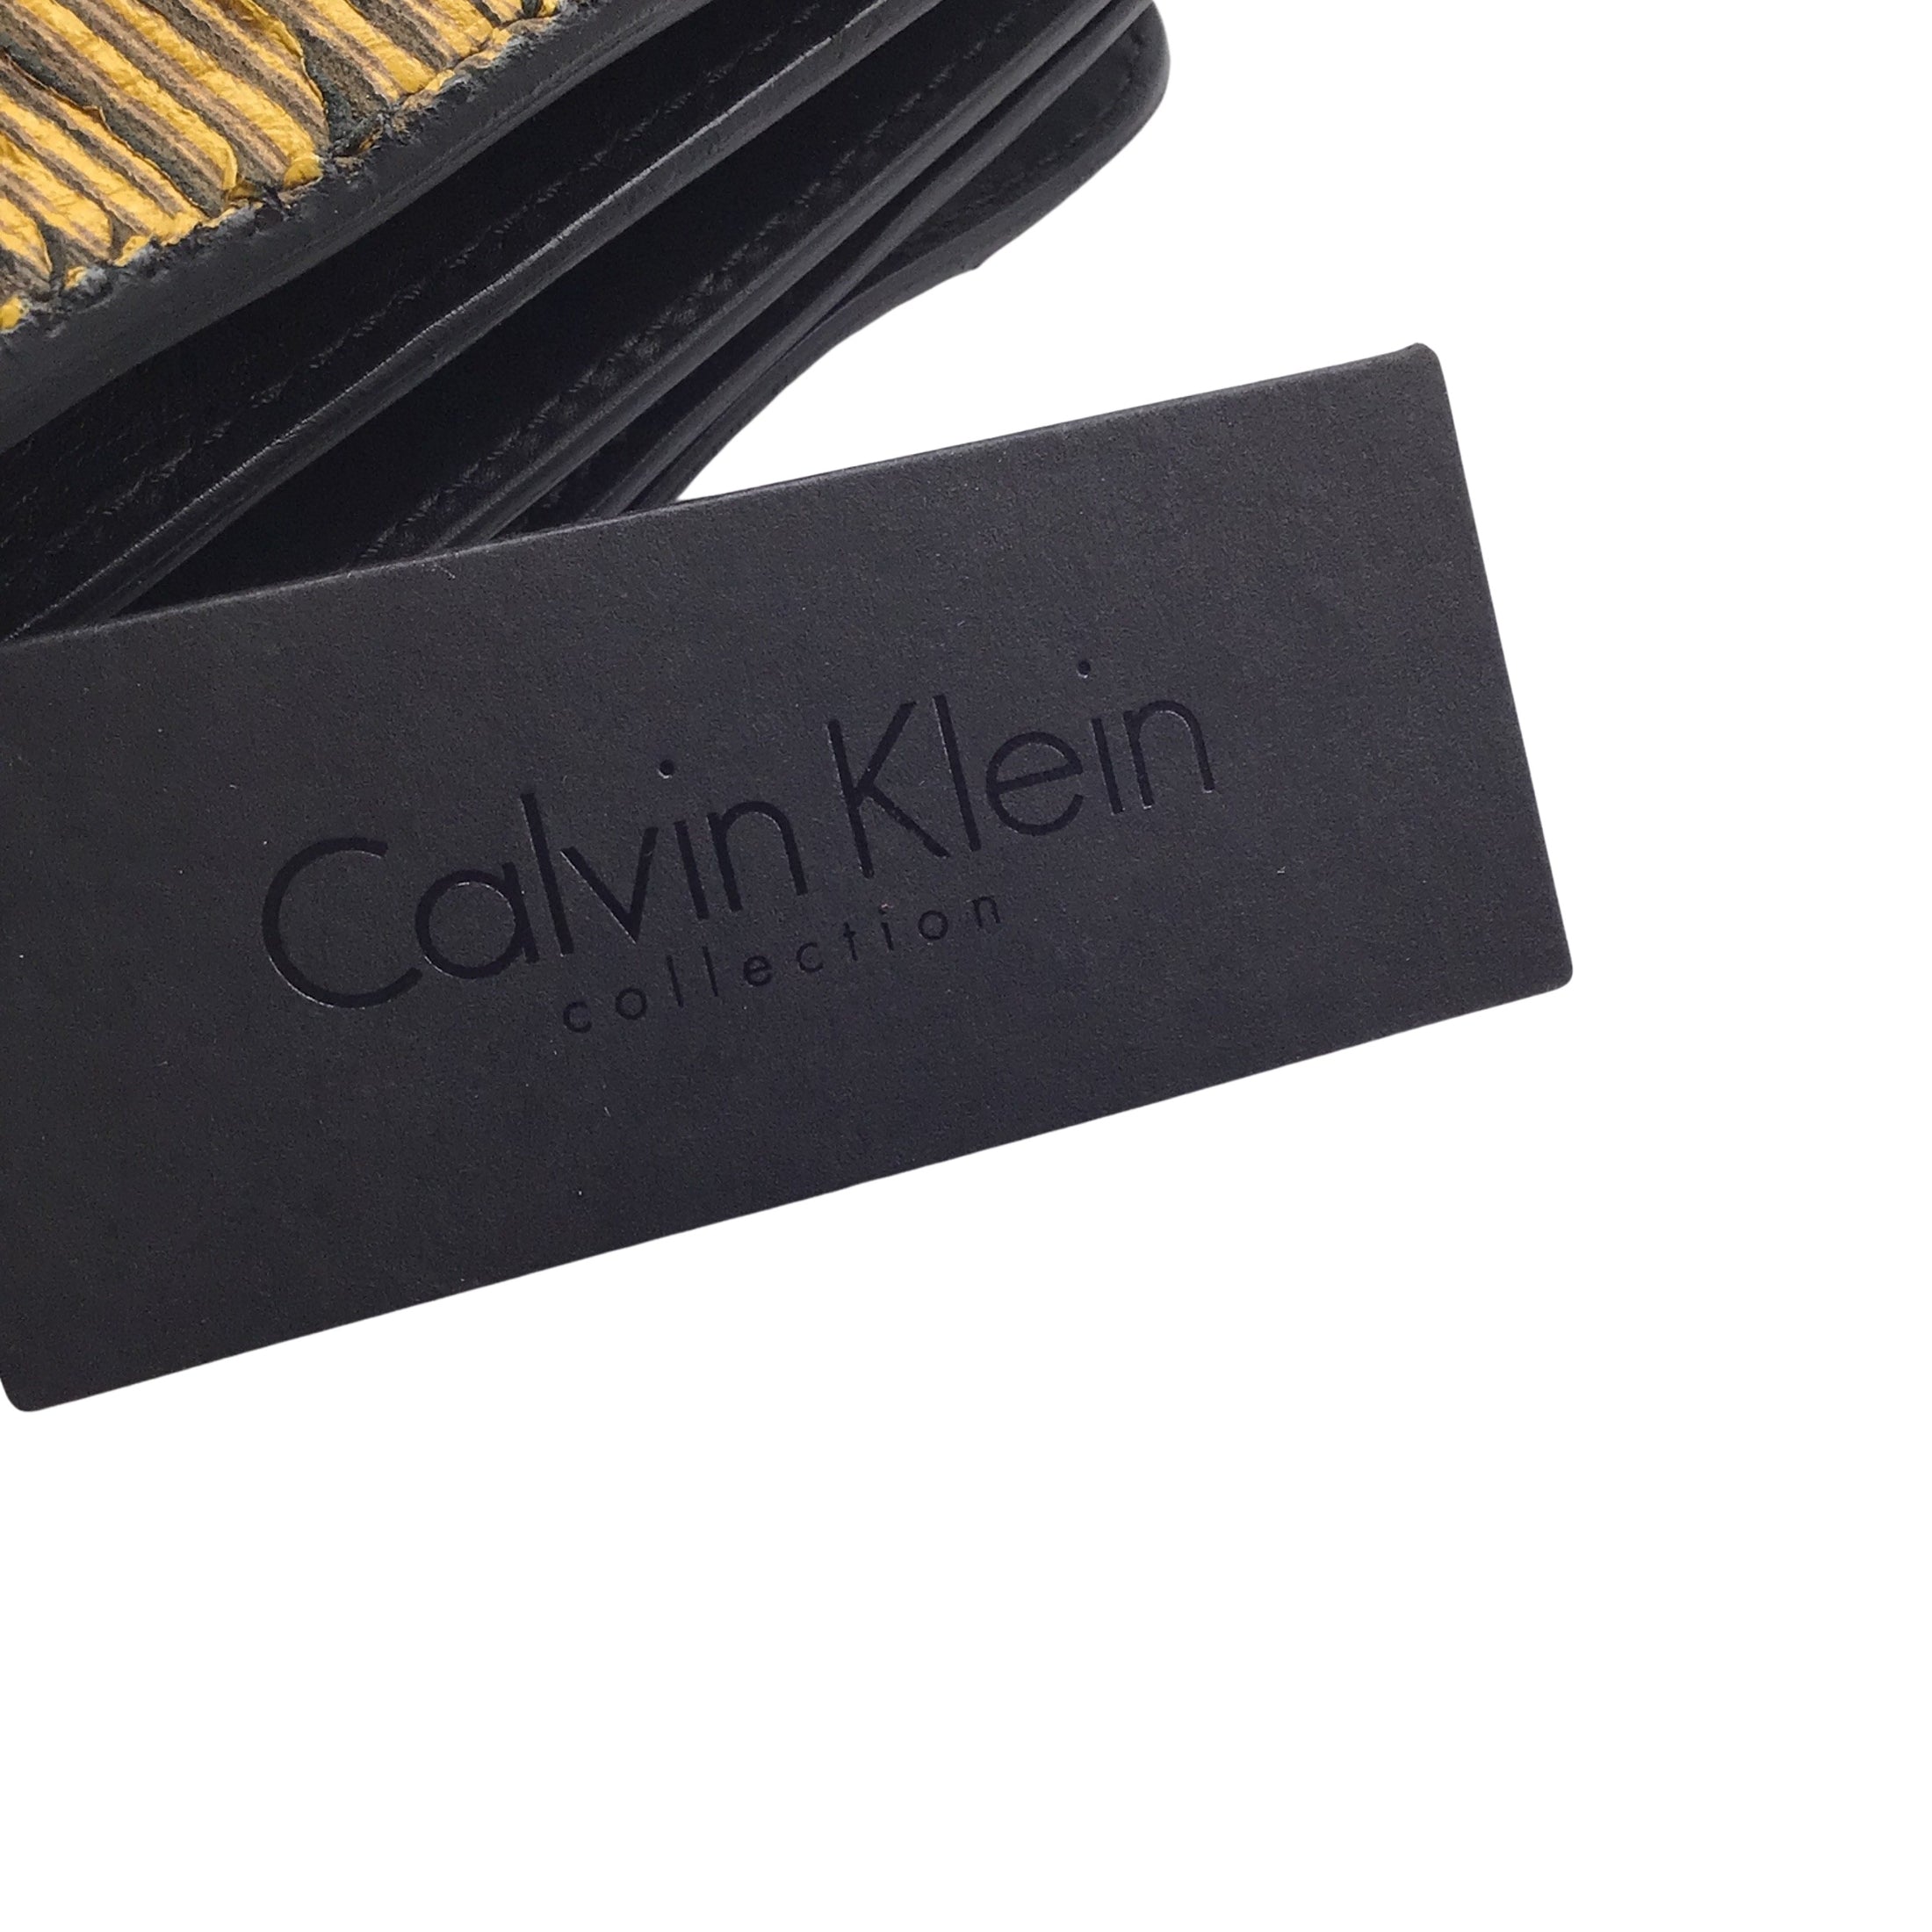 Calvin Klein Collection Yellow / Black Accordion Clutch Bag